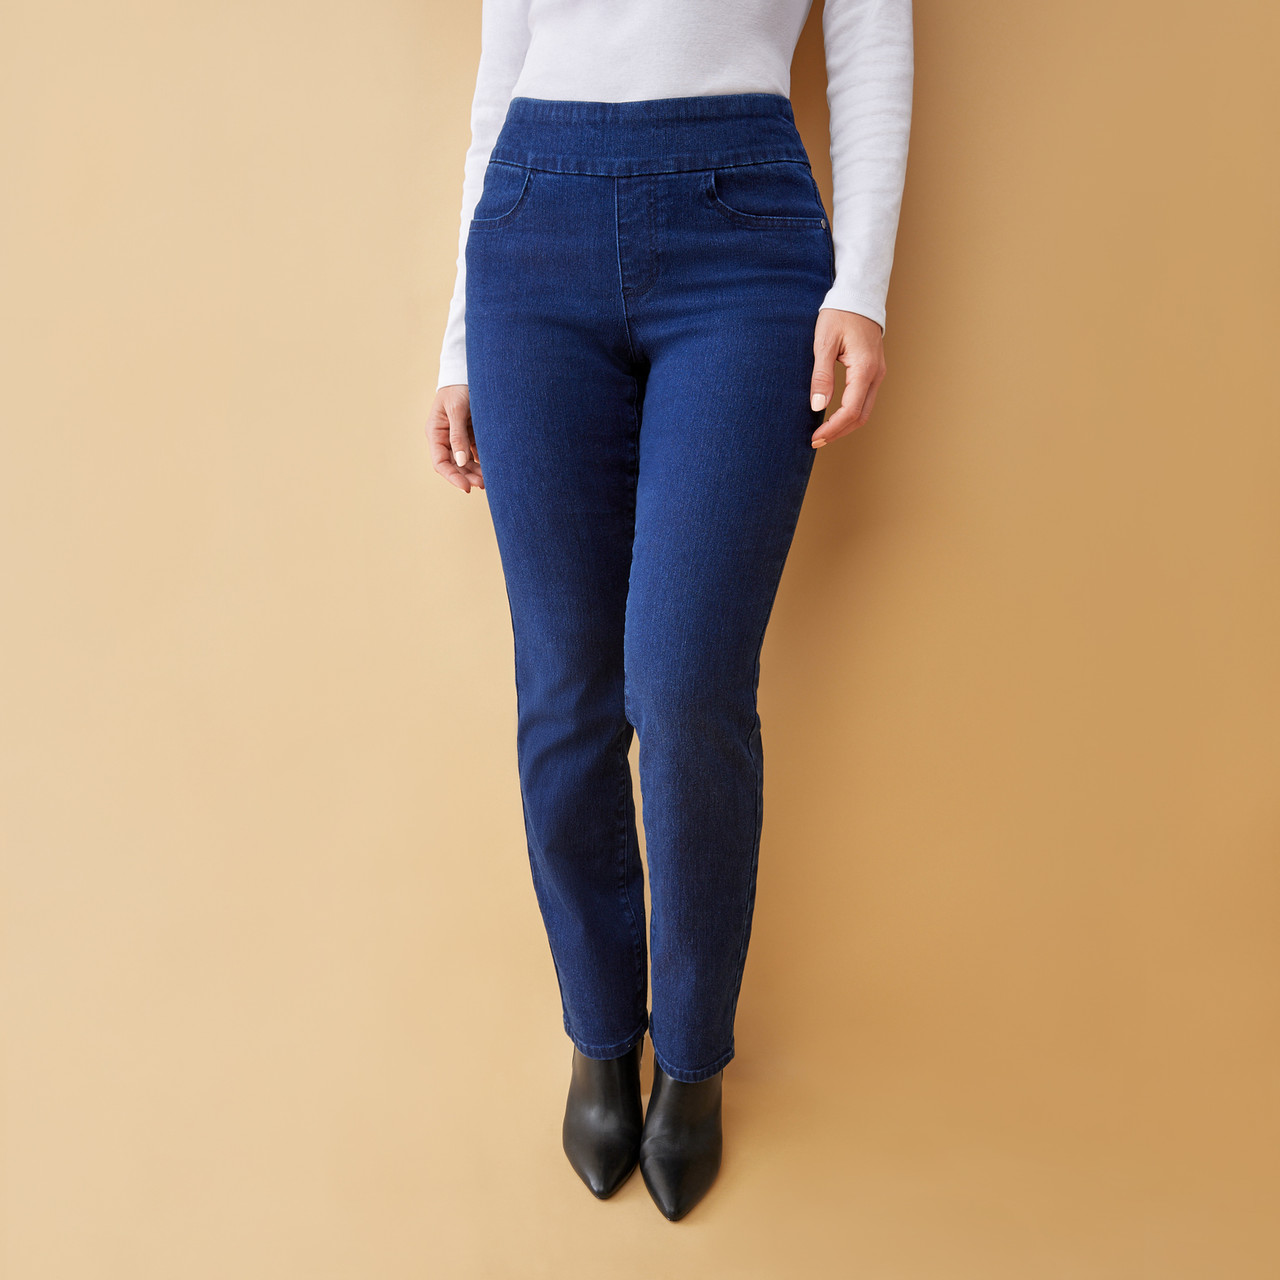 Women's Straight Jeans, Dark blue